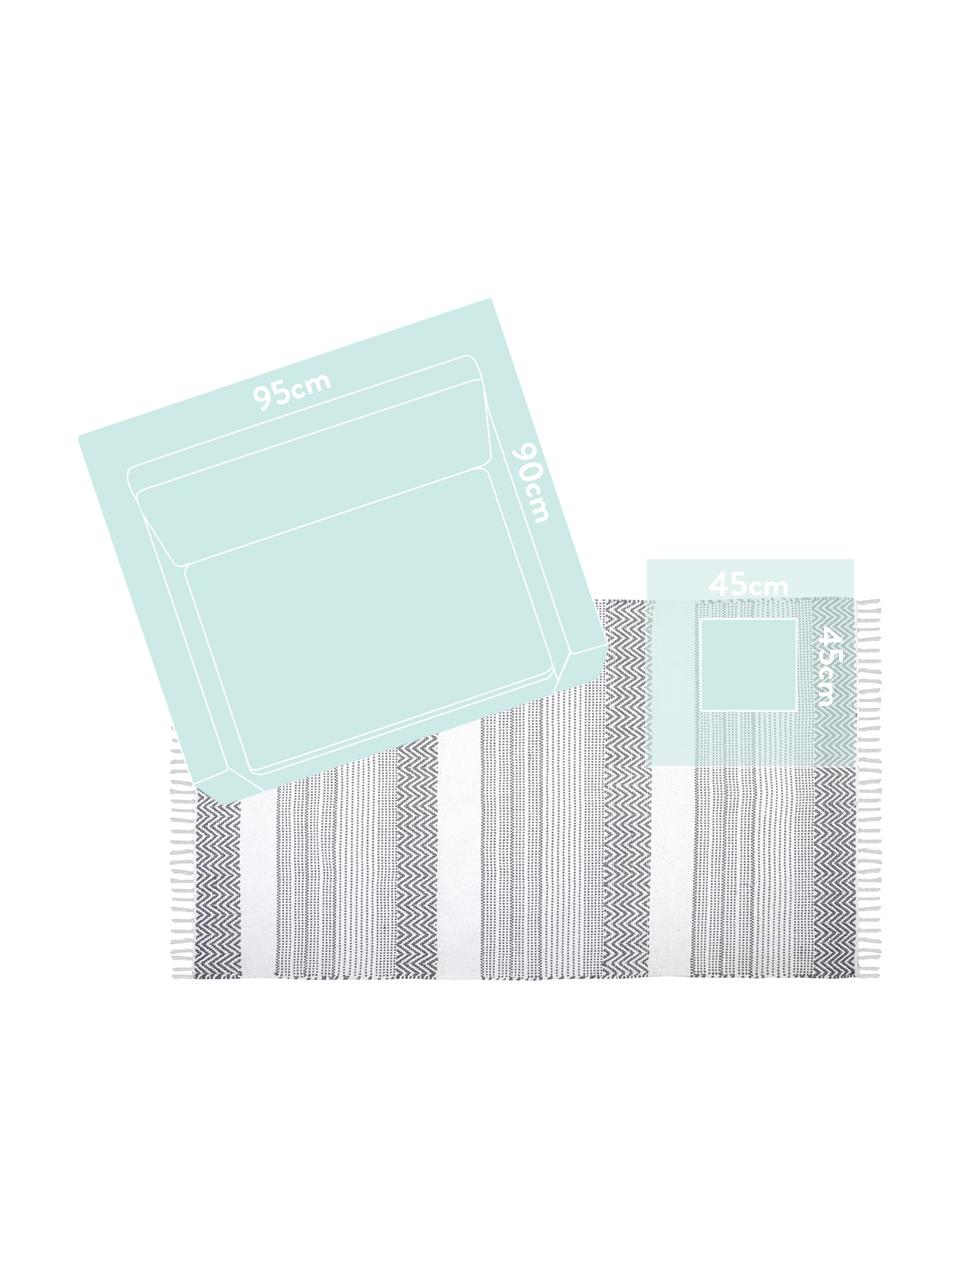 Baumwollteppich Iceland mit grafischem Streifendesign, 100% Baumwolle, Grau, Weiß, B 90 x L 150 cm (Größe XS)